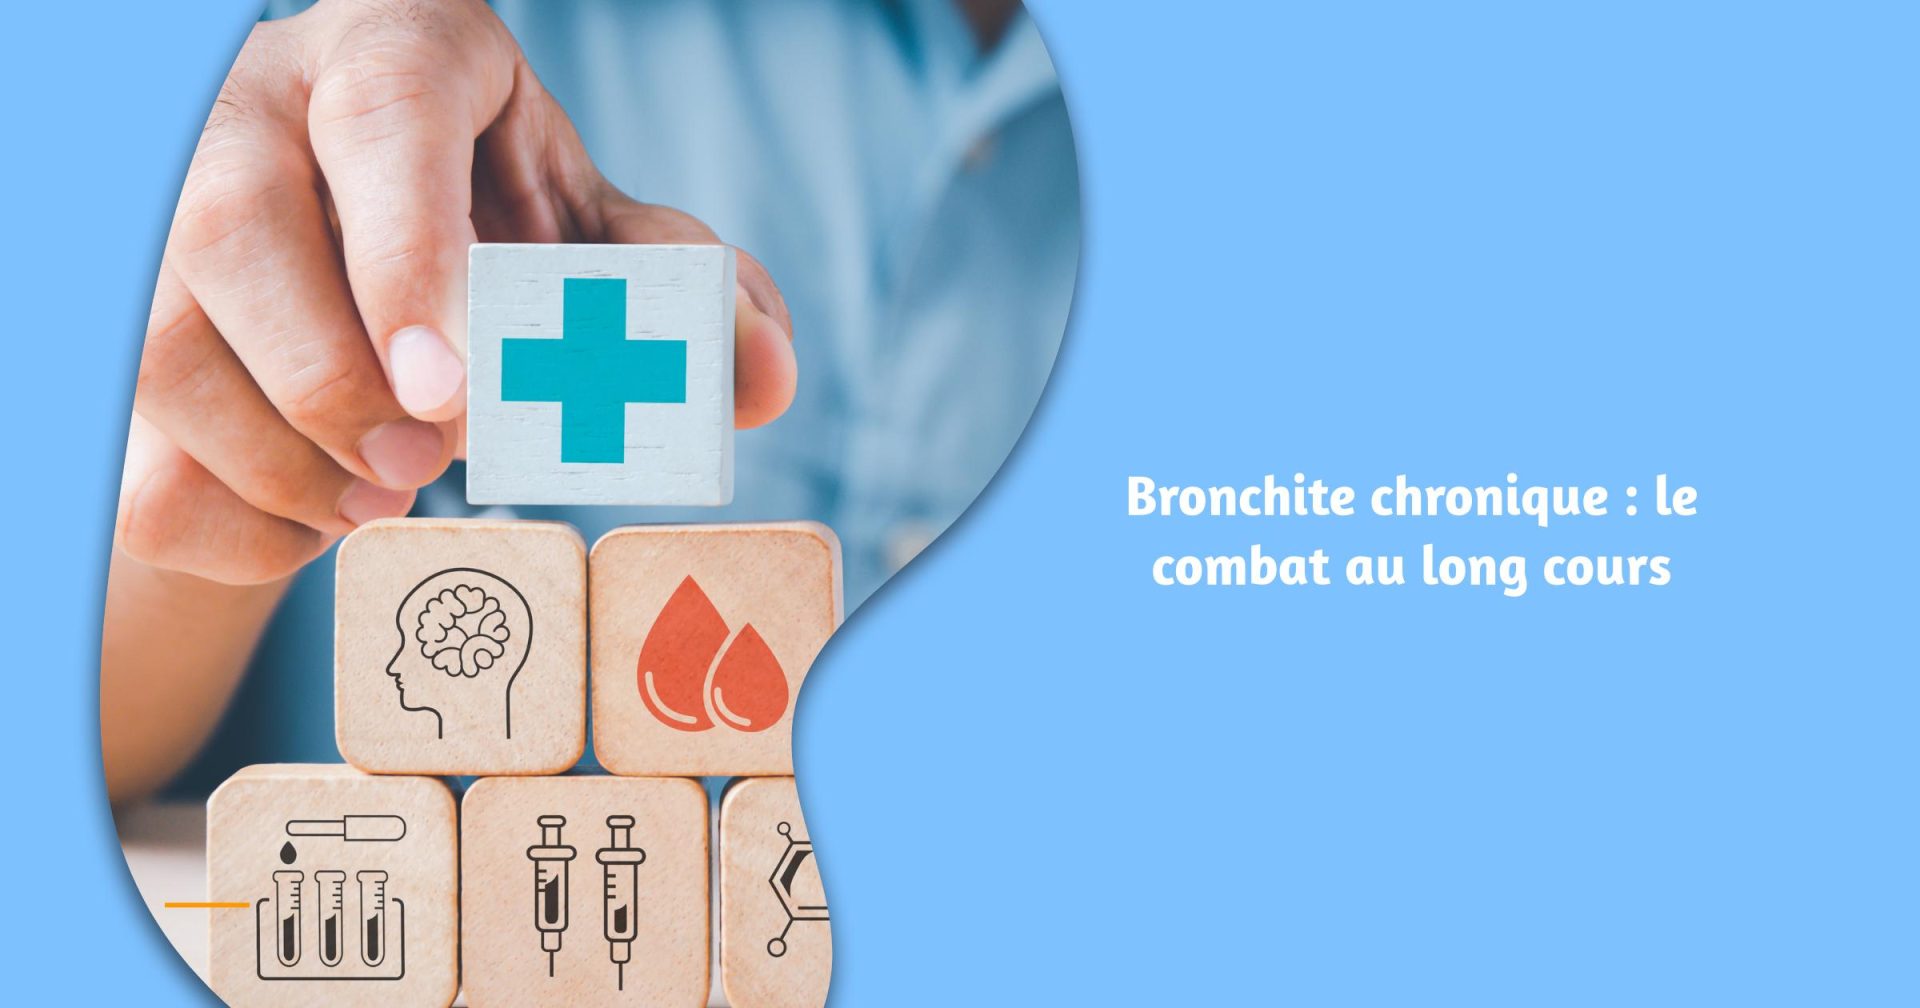 Bronchite chronique : le combat au long cours